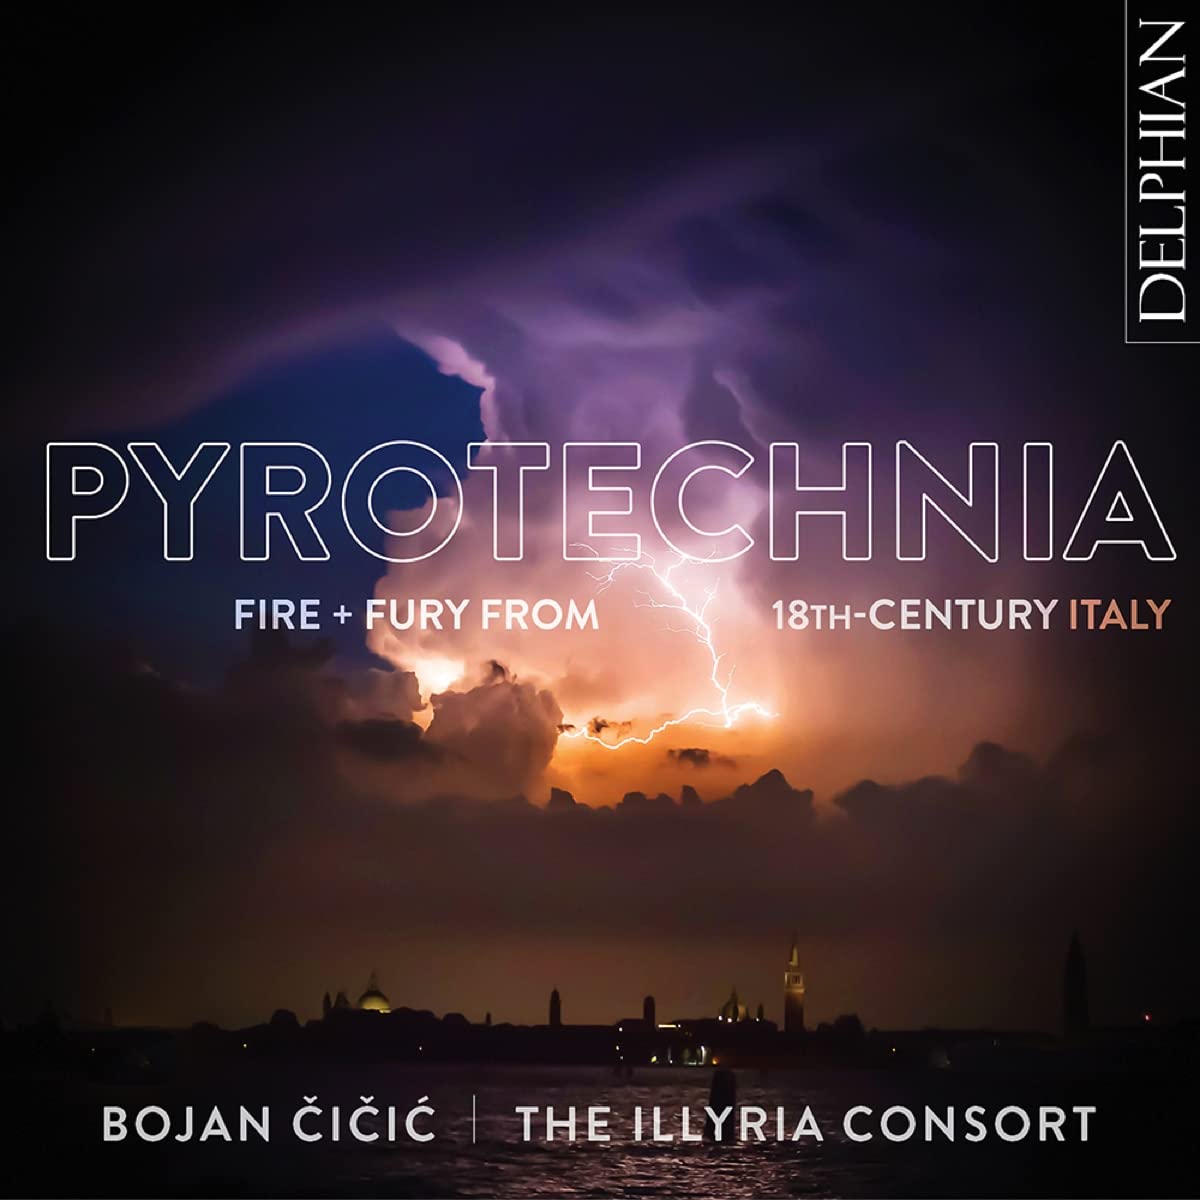 Audio Cd Bojan Cicic / Illyria Consort: Pyrotechnia NUOVO SIGILLATO, EDIZIONE DEL 18/10/2021 SUBITO DISPONIBILE